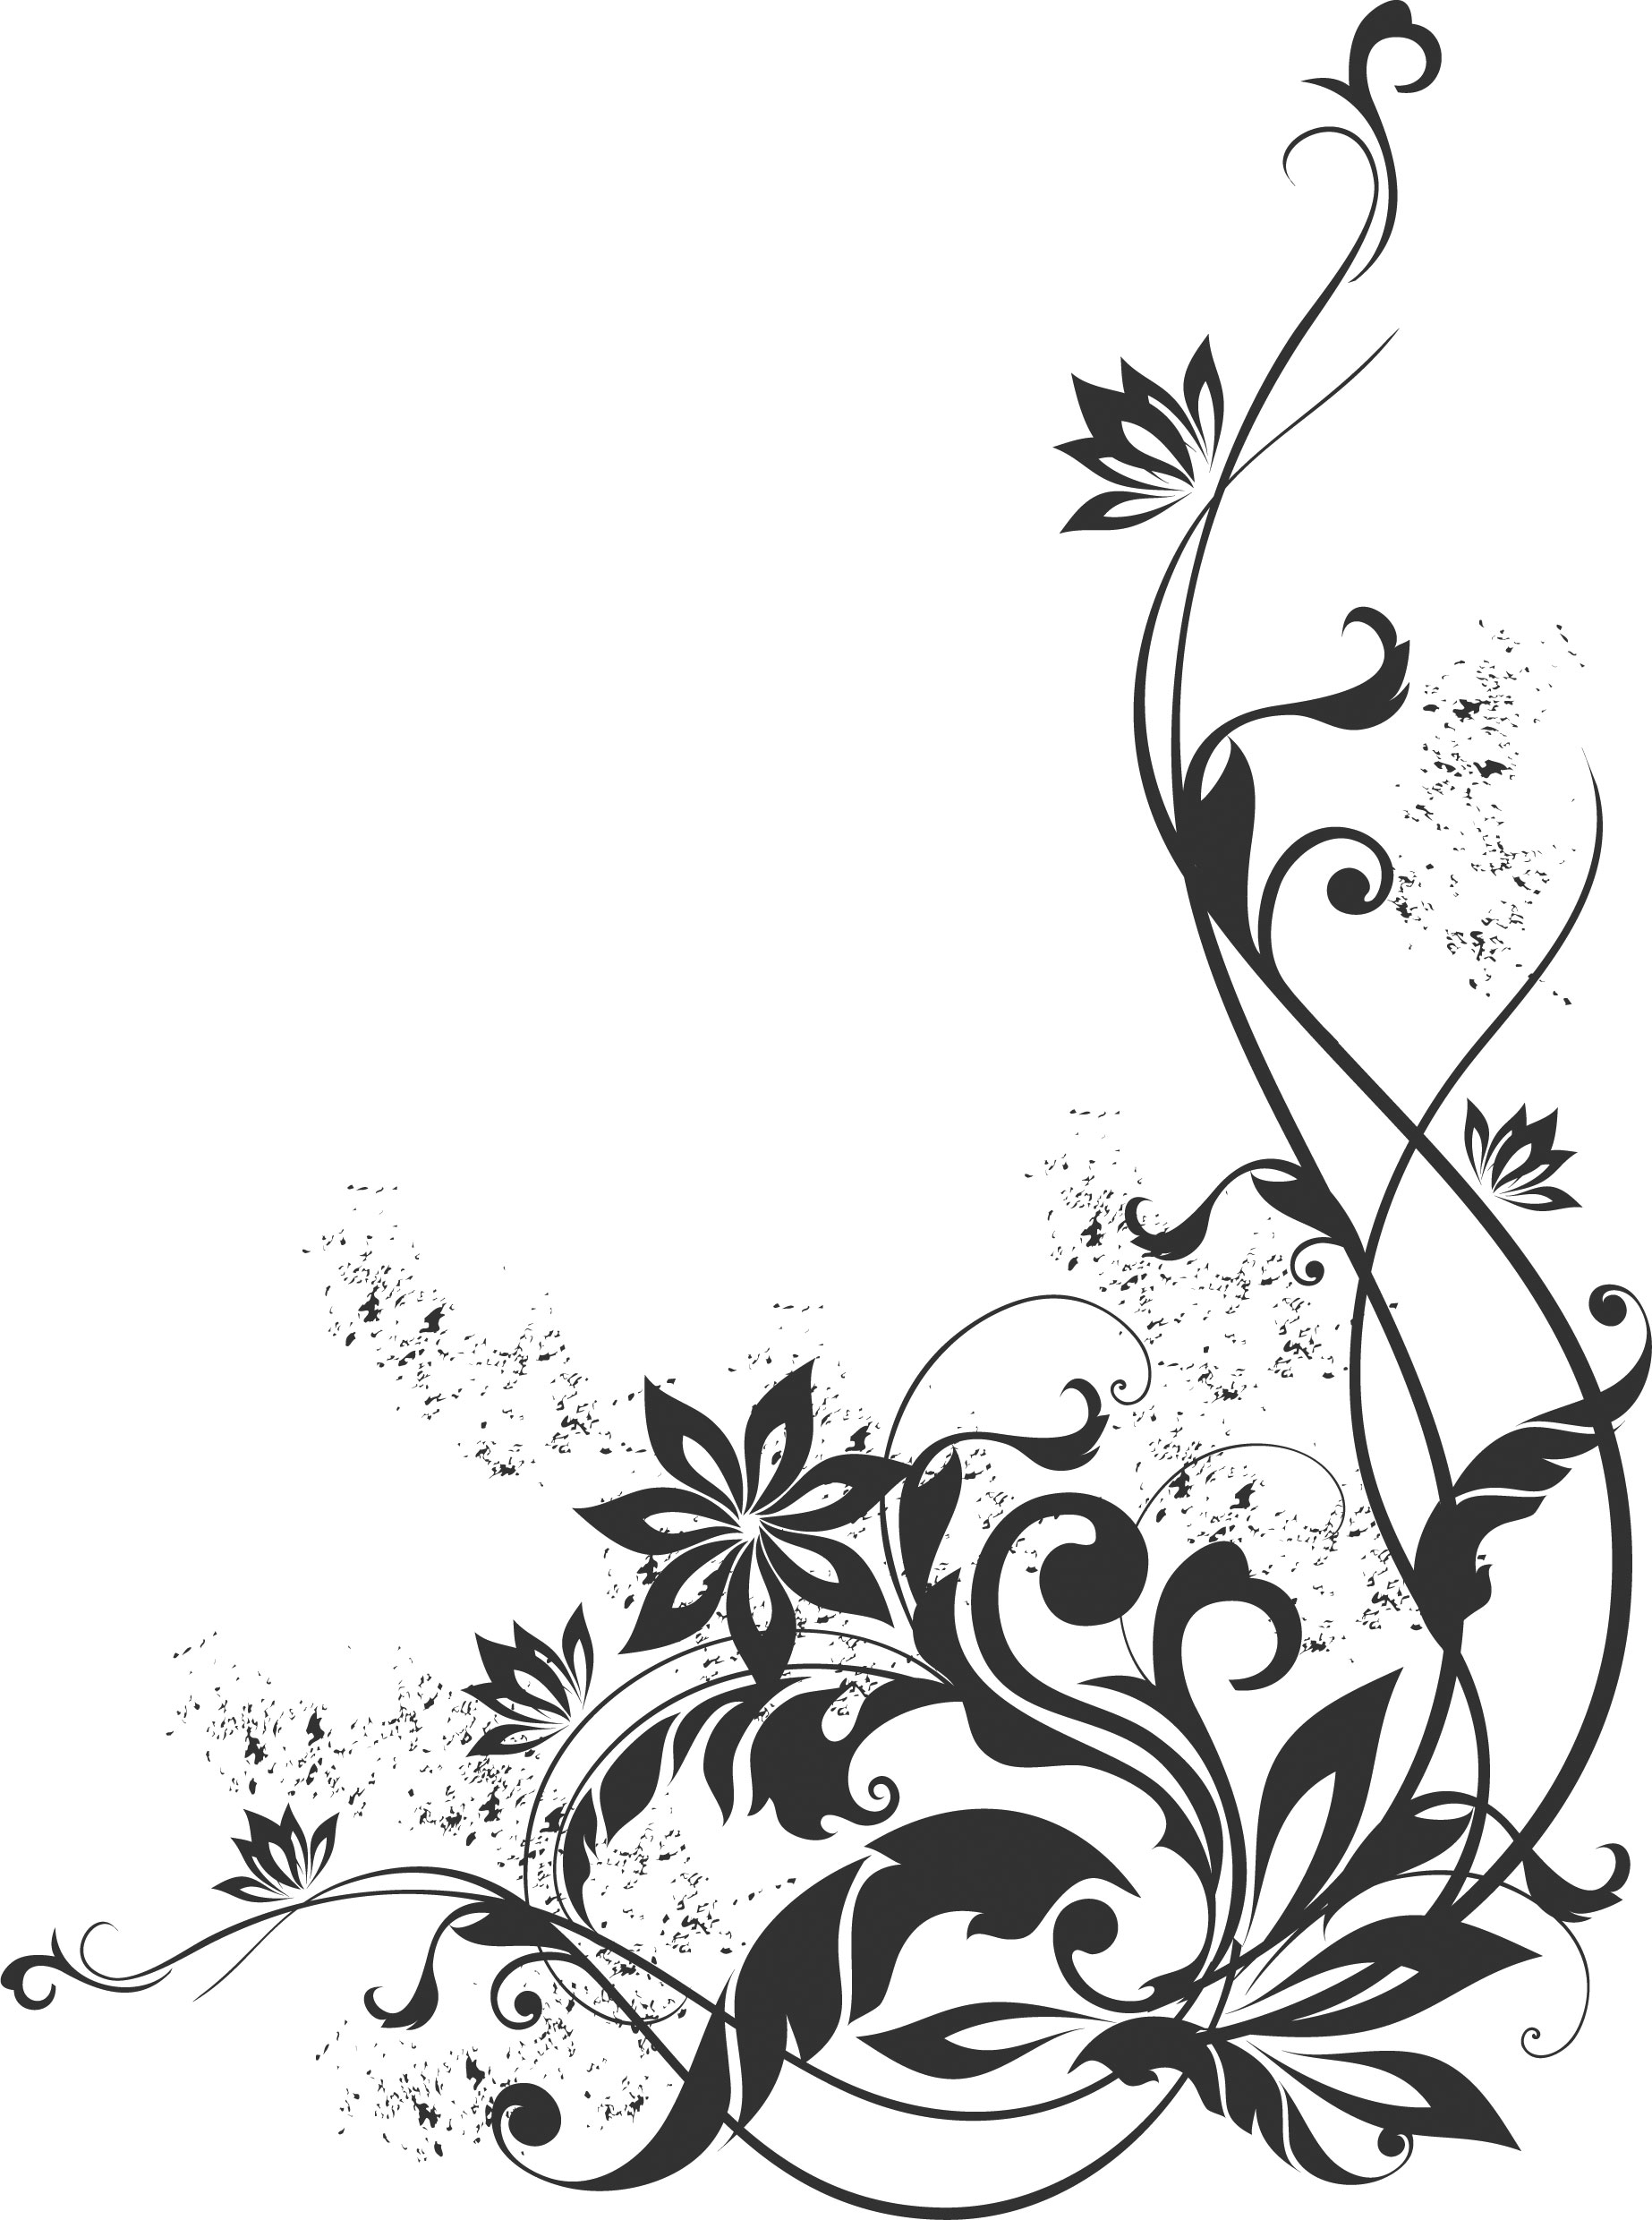 ポップでかわいい花のイラスト フリー素材 No 11 白黒 蔓葉 コーナー